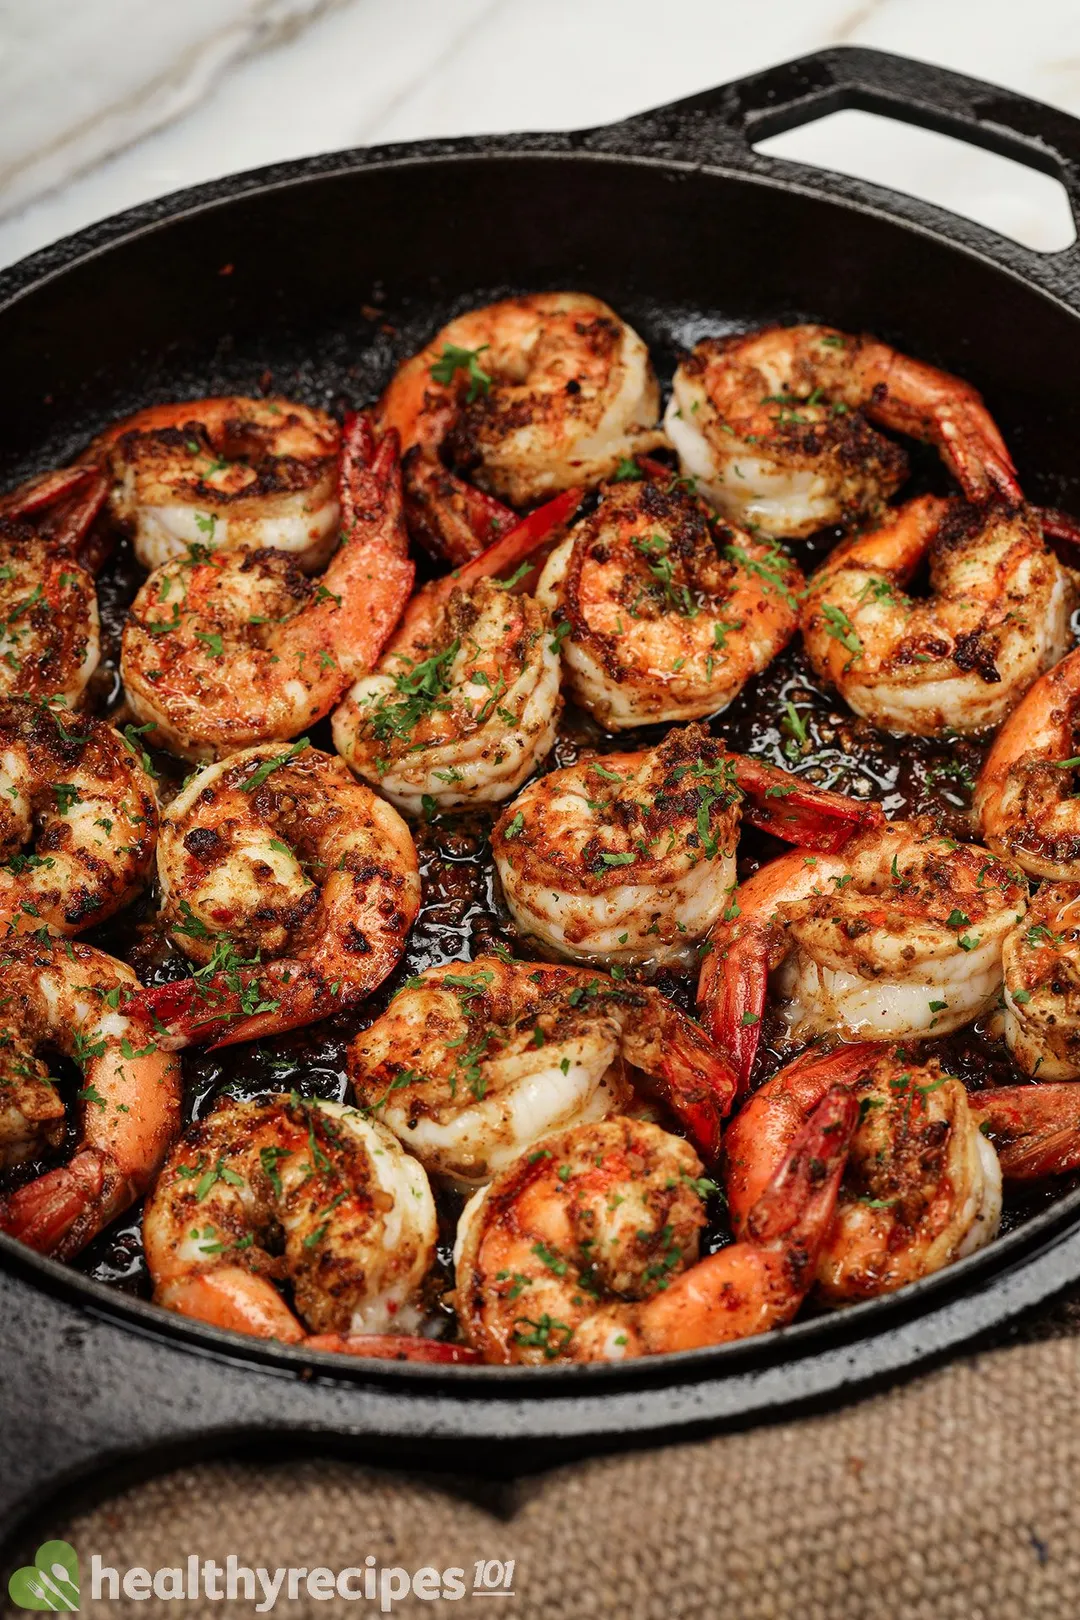 https://cdn.healthyrecipes101.com/recipes/images/shrimps/pan-seared-shrimp-recipe-clbf7vj78002uf4mrc4s27yk1.jpg?w=1080&q=80